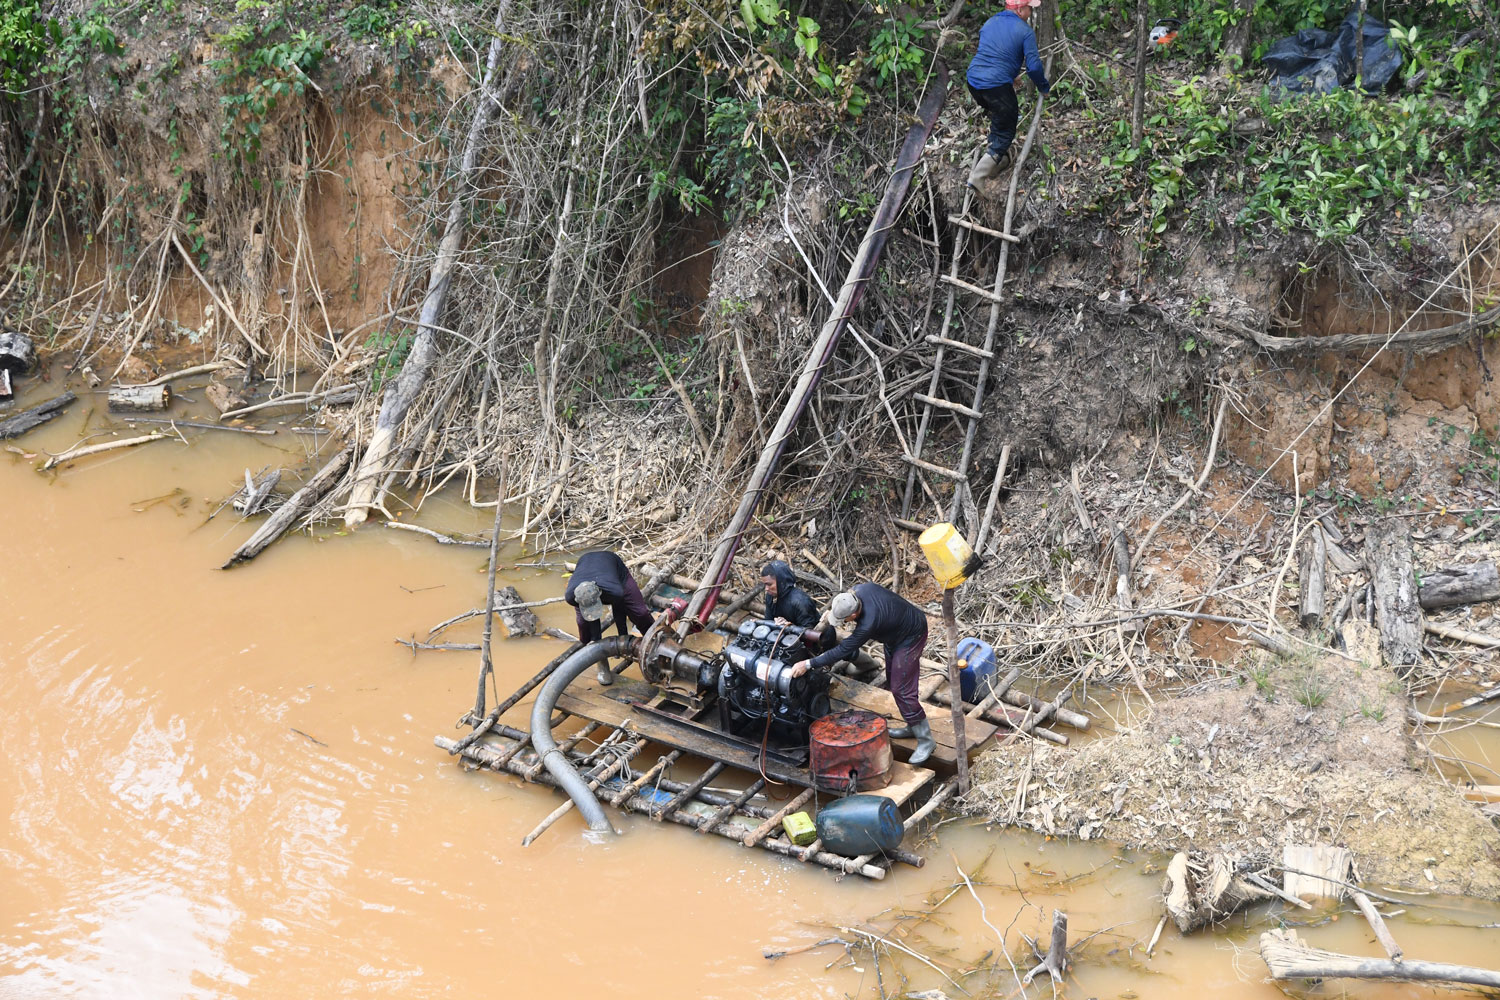 Montage du matériel pour extraire l’or – crédit Parc amazonien de Guyane